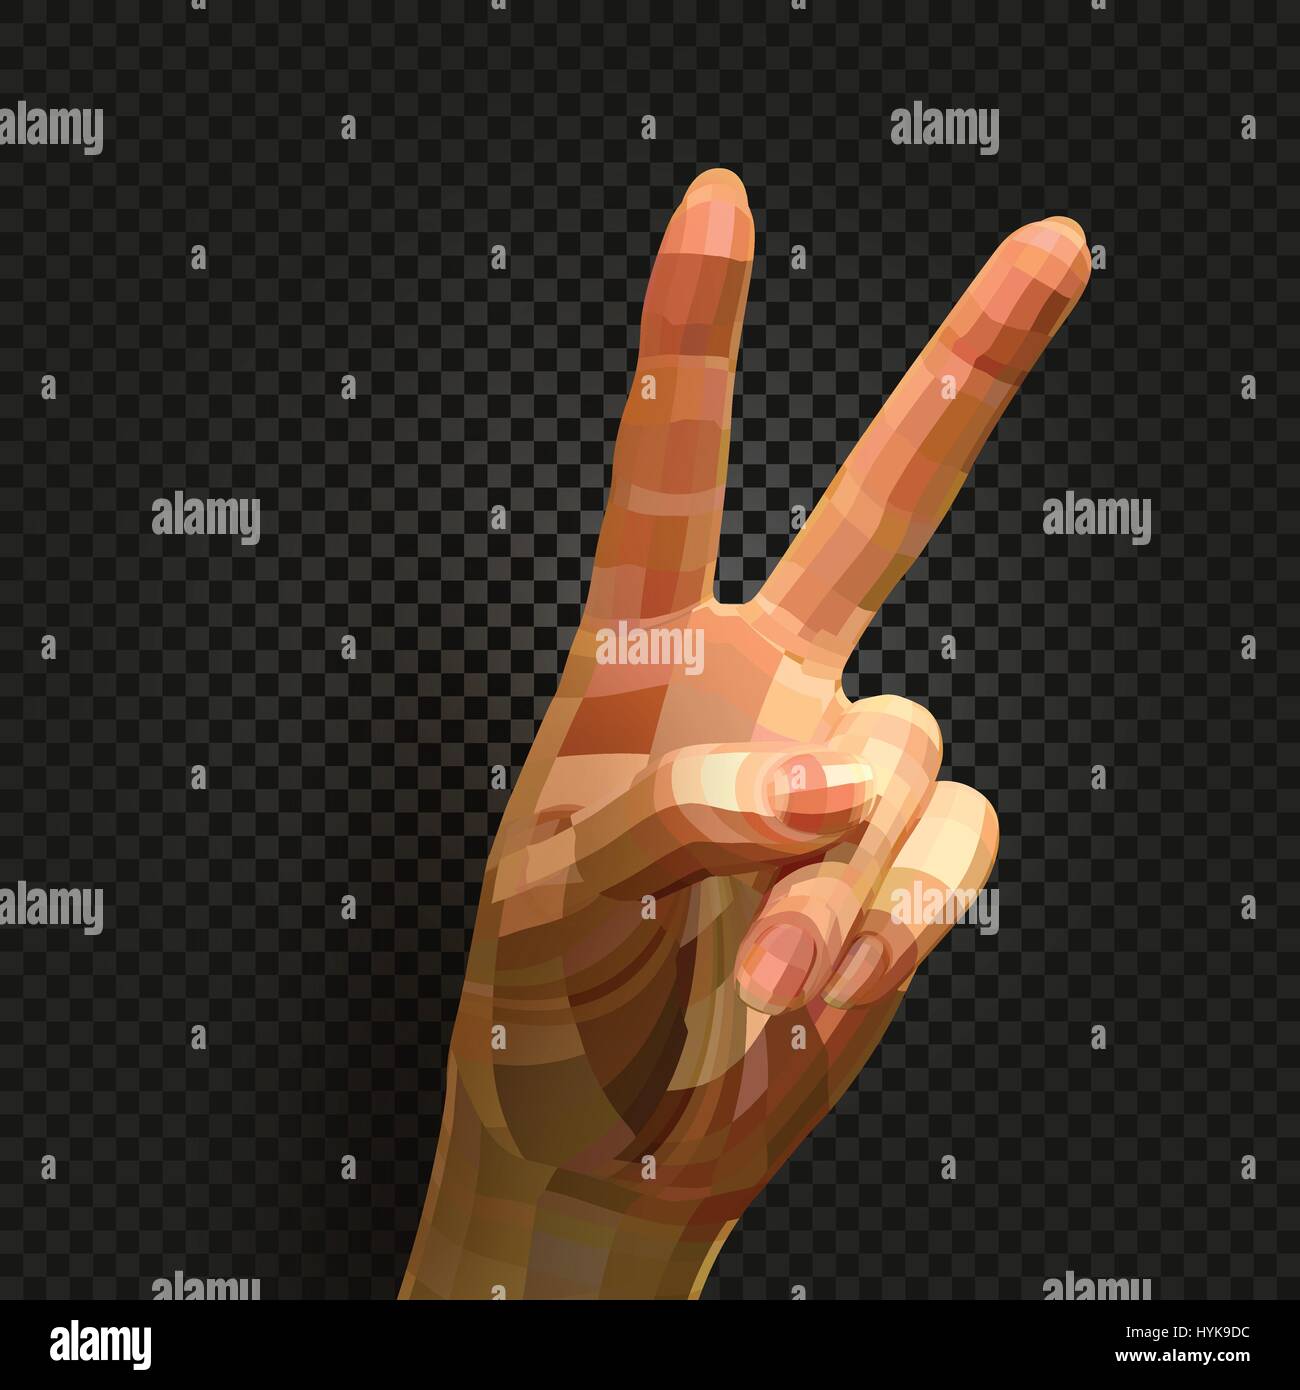 Isolierte abstrakte realistische menschliche Hand Bild auf schwarzem Hintergrund, zwei Finger Frieden oder Sieg Zeichen Vektor-illustration Stock Vektor